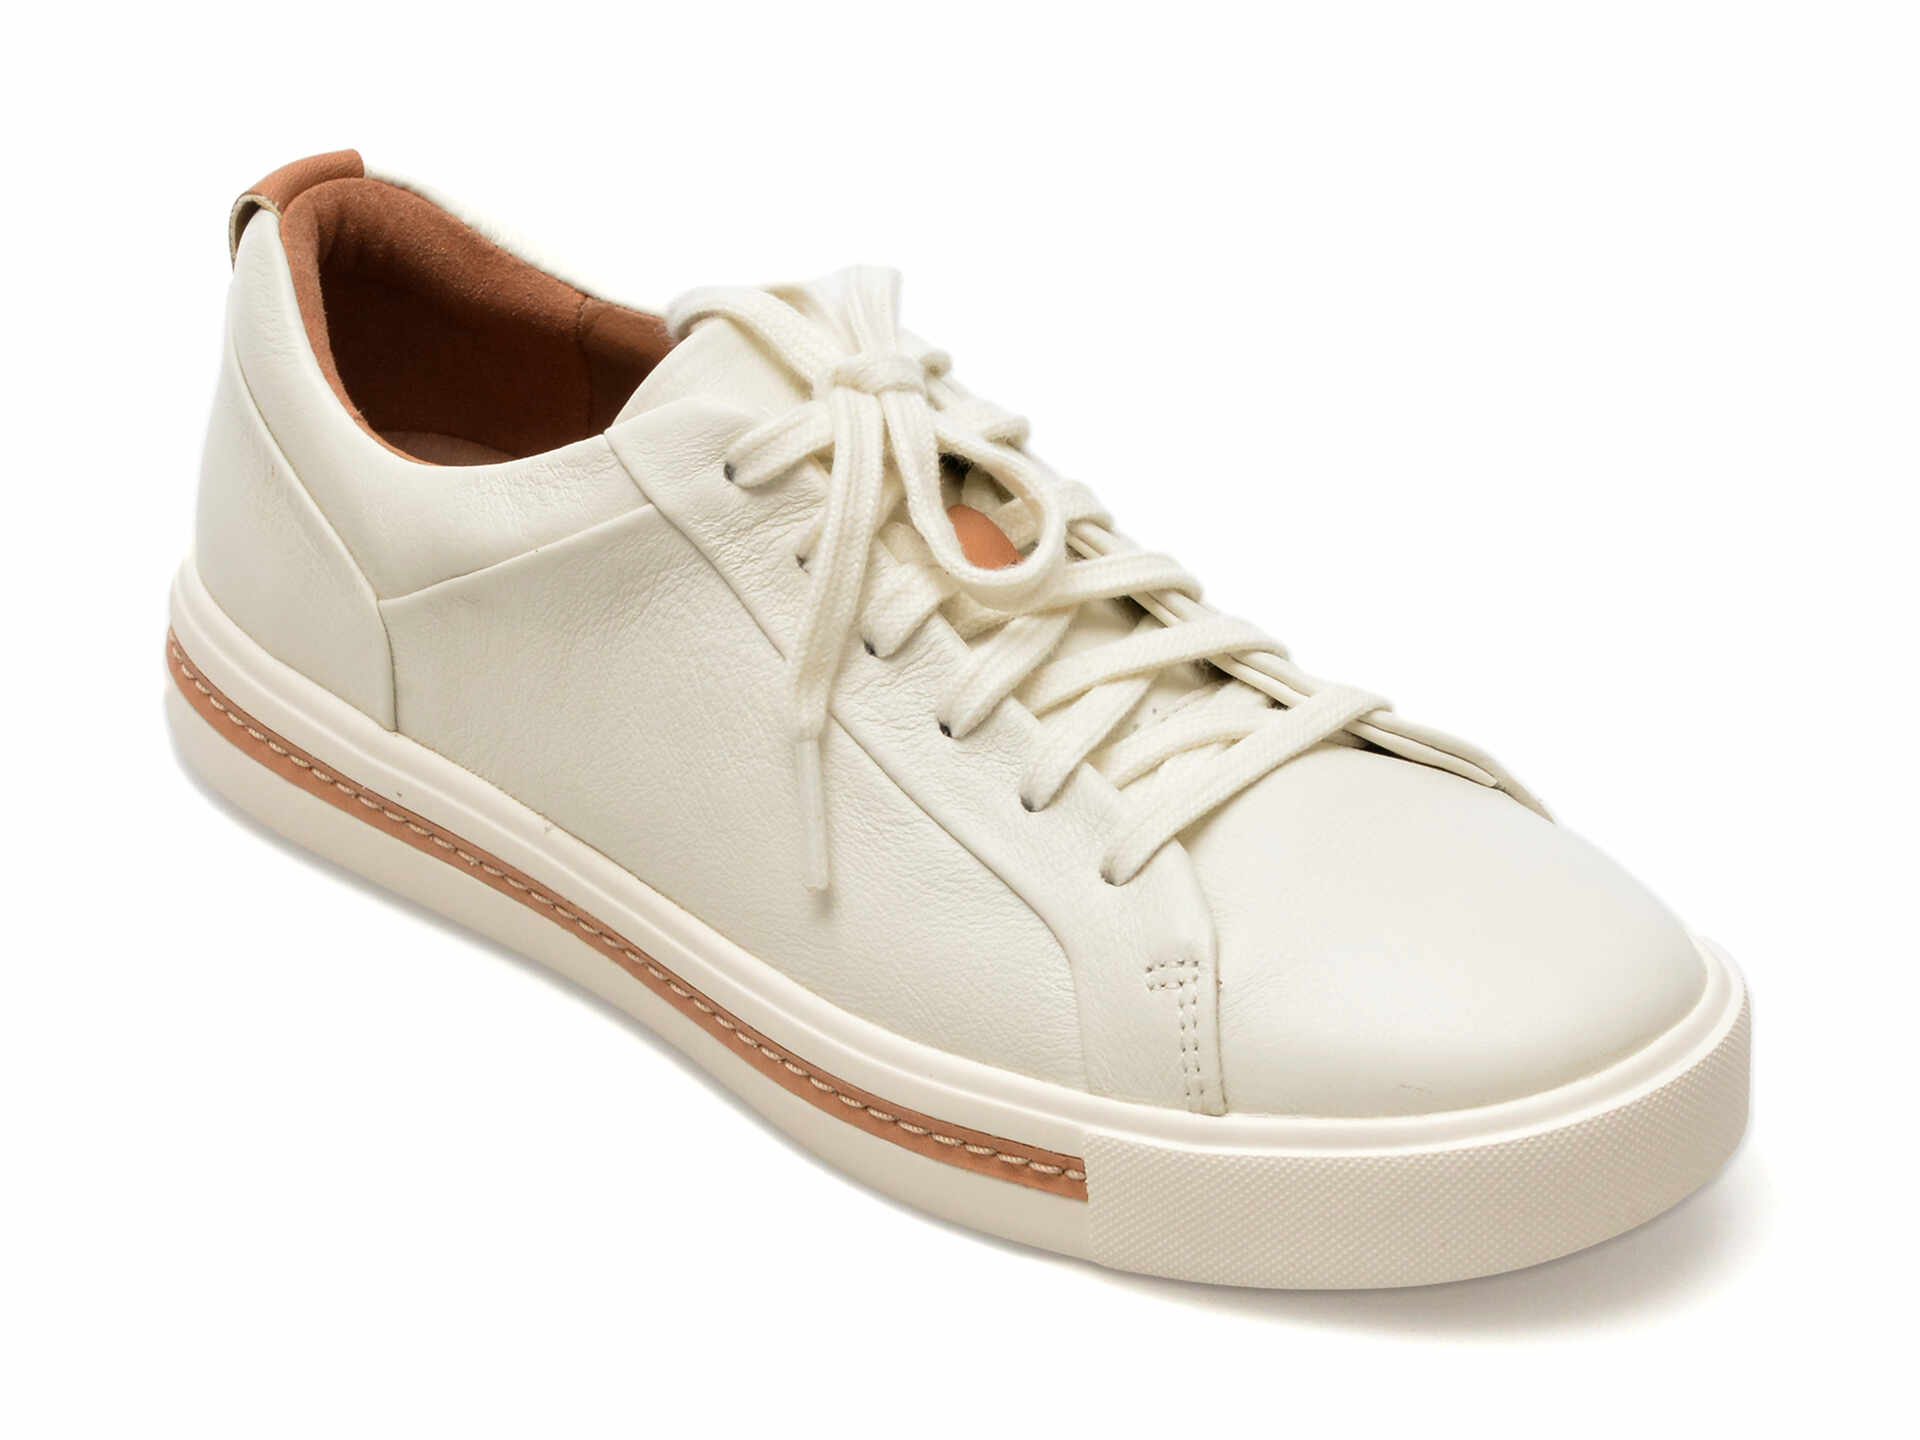 Pantofi CLARKS albi, UN MAUI LACE, din piele naturala